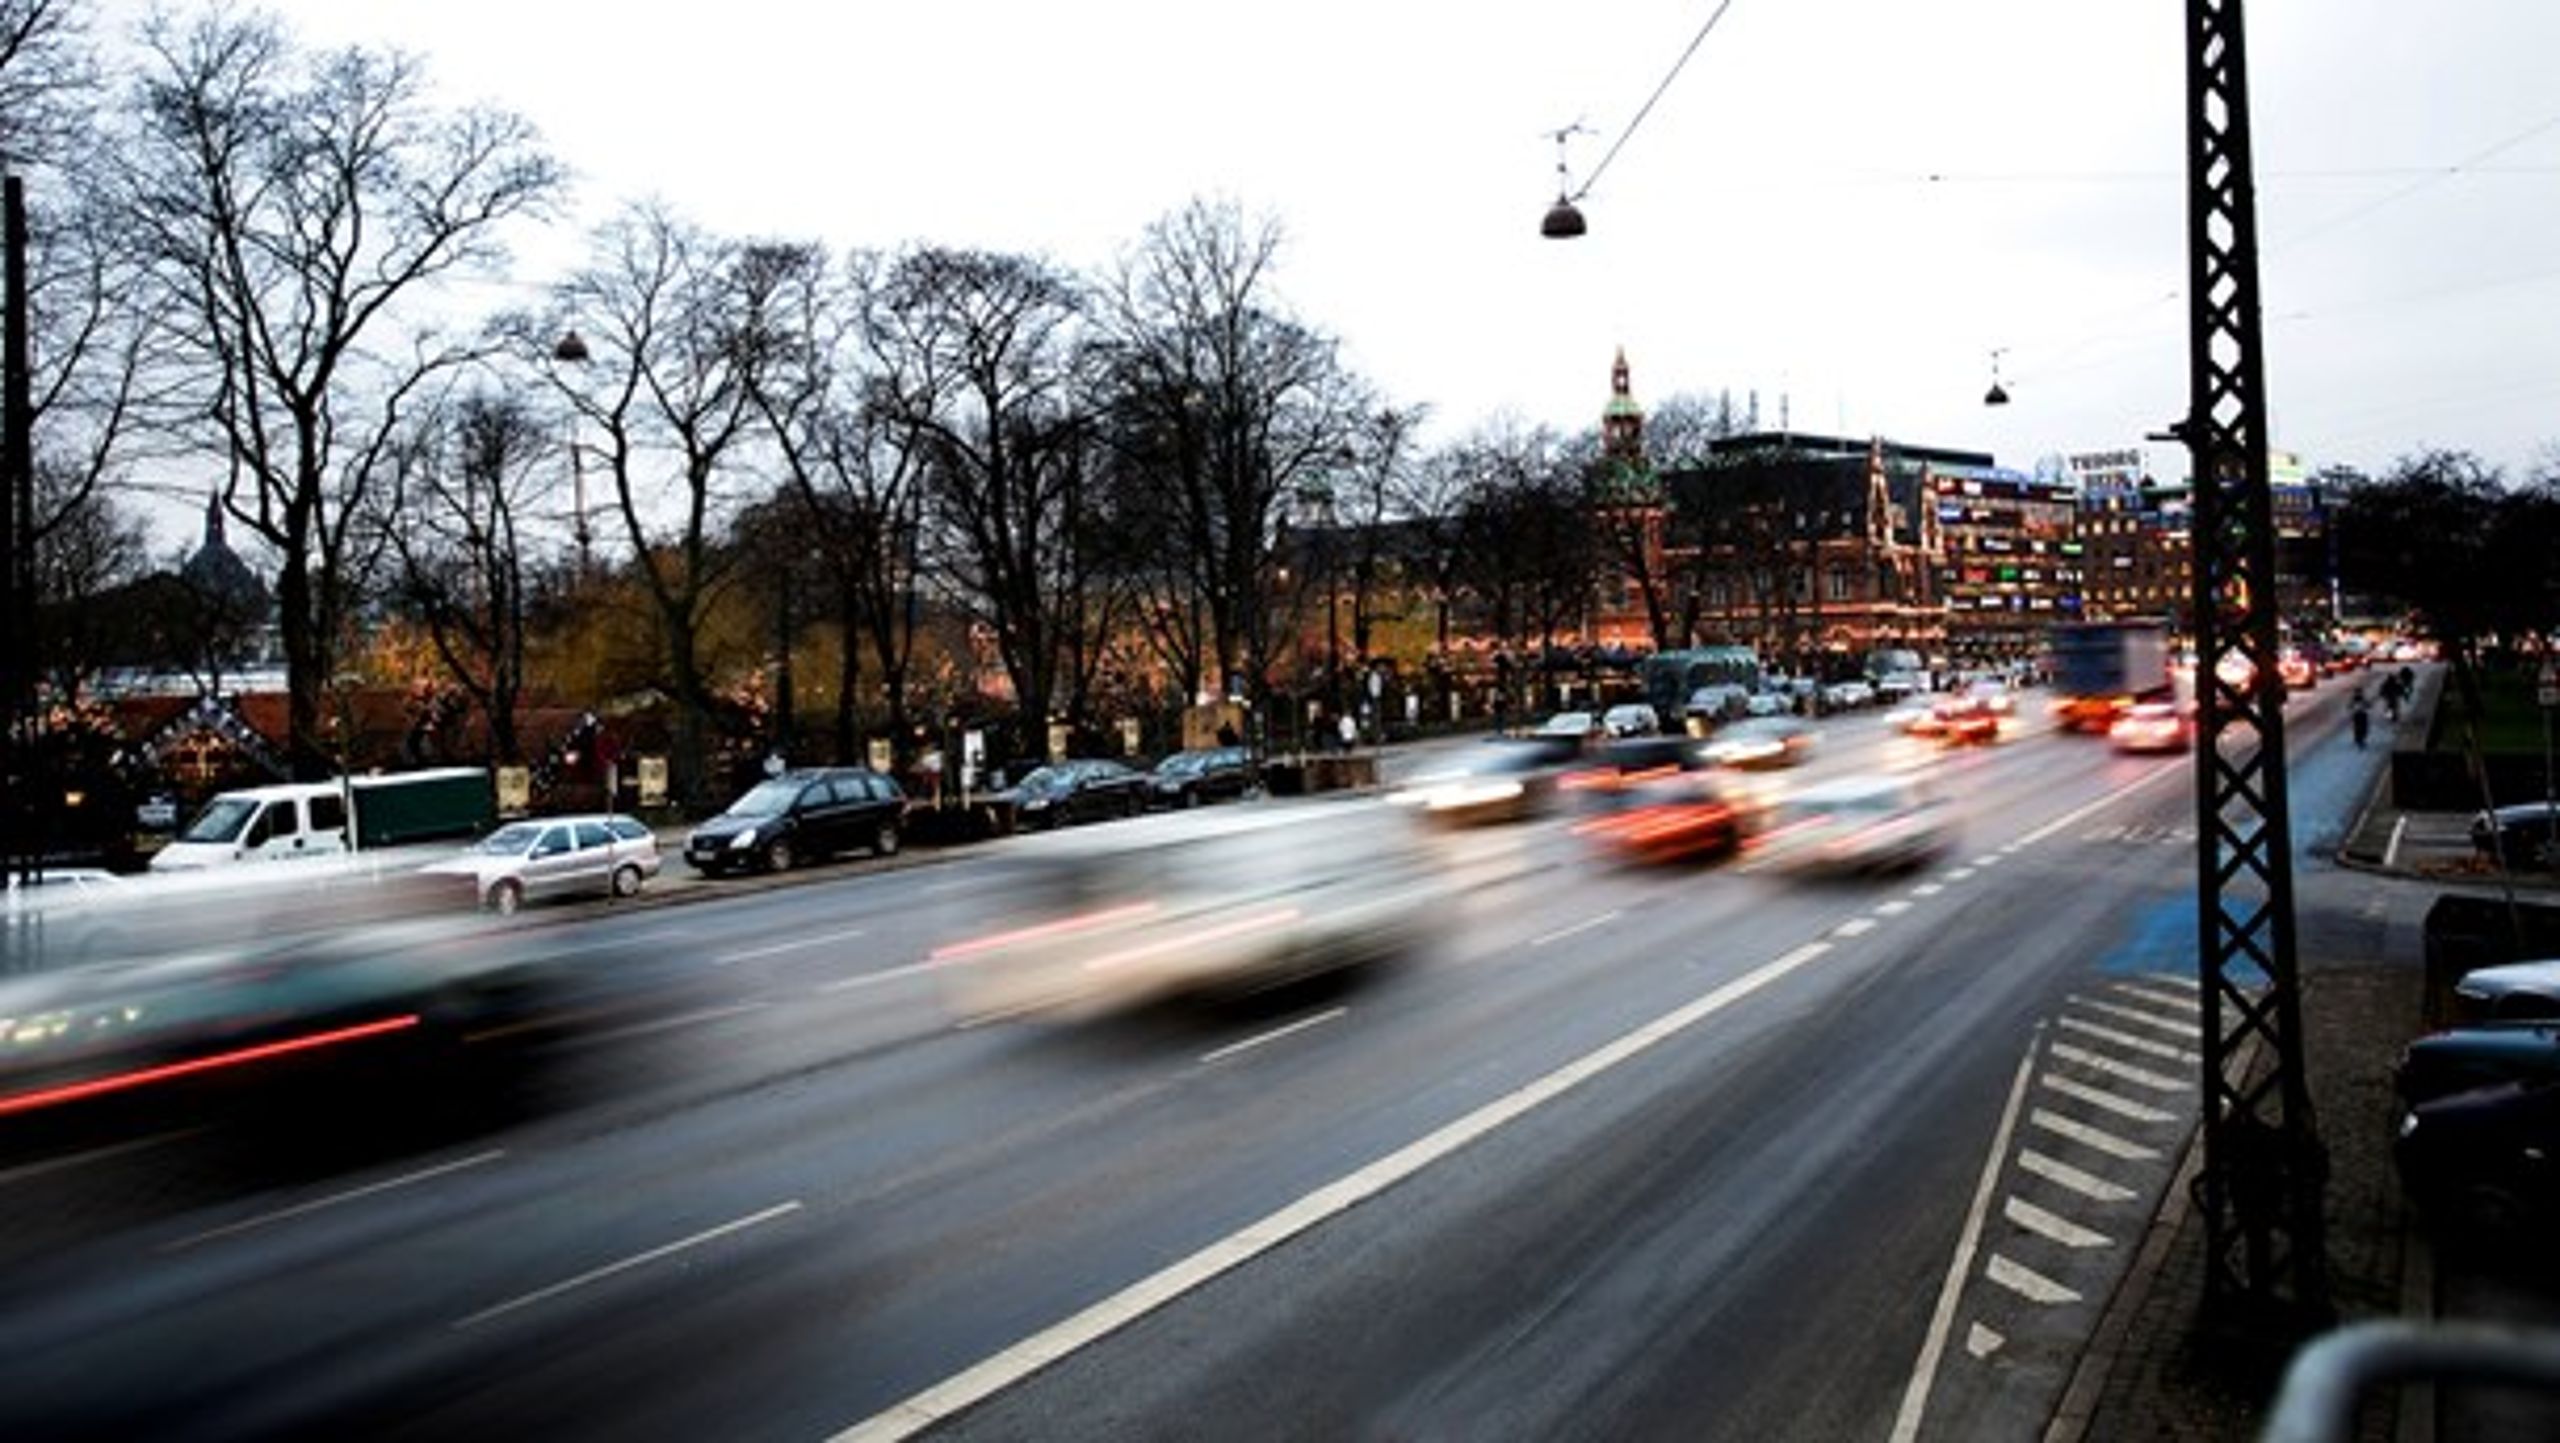 En nedgravet ringvej skal lede en stor del af trafikken uden om Københavns centrale by. Pengene skal komme fra salg af byggegrunde i en endnu ikke eksisterende bydel.